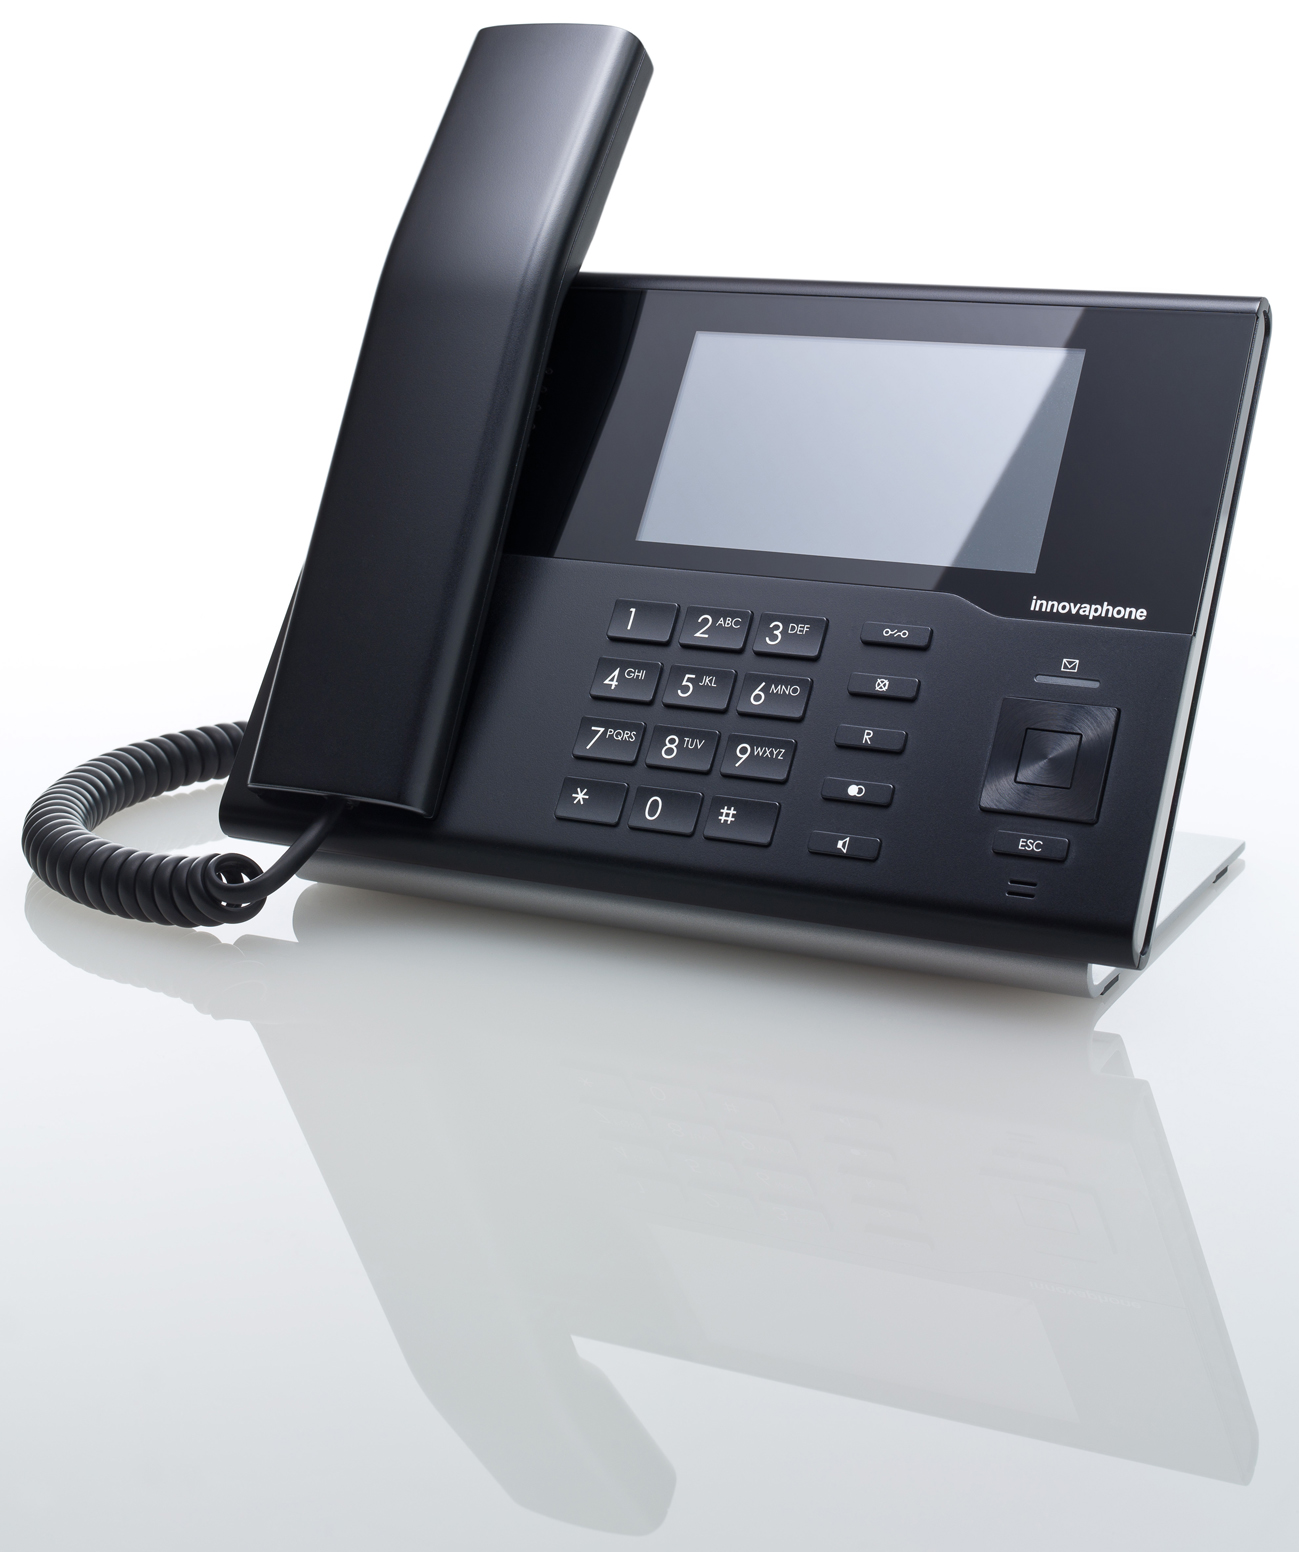 Per la comunicazione con Editori e rete vendite, Adriatica Press S.p.A. si affida alle soluzioni VoIP e UC di innovaphone